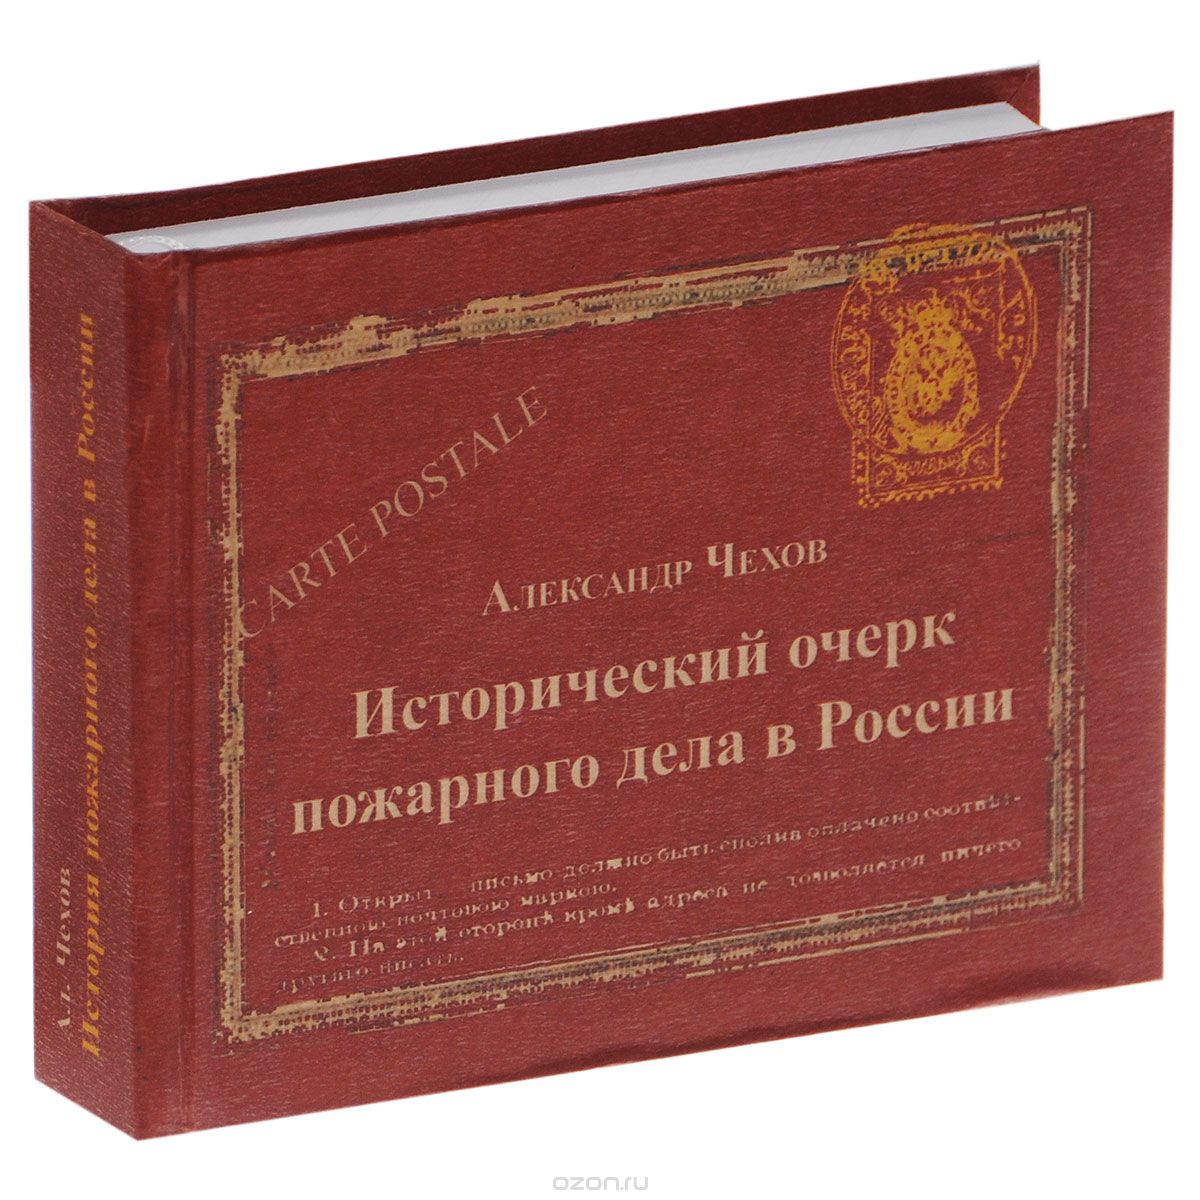 Скачать книгу "Исторический очерк пожарного дела в России, Александр Чехов"